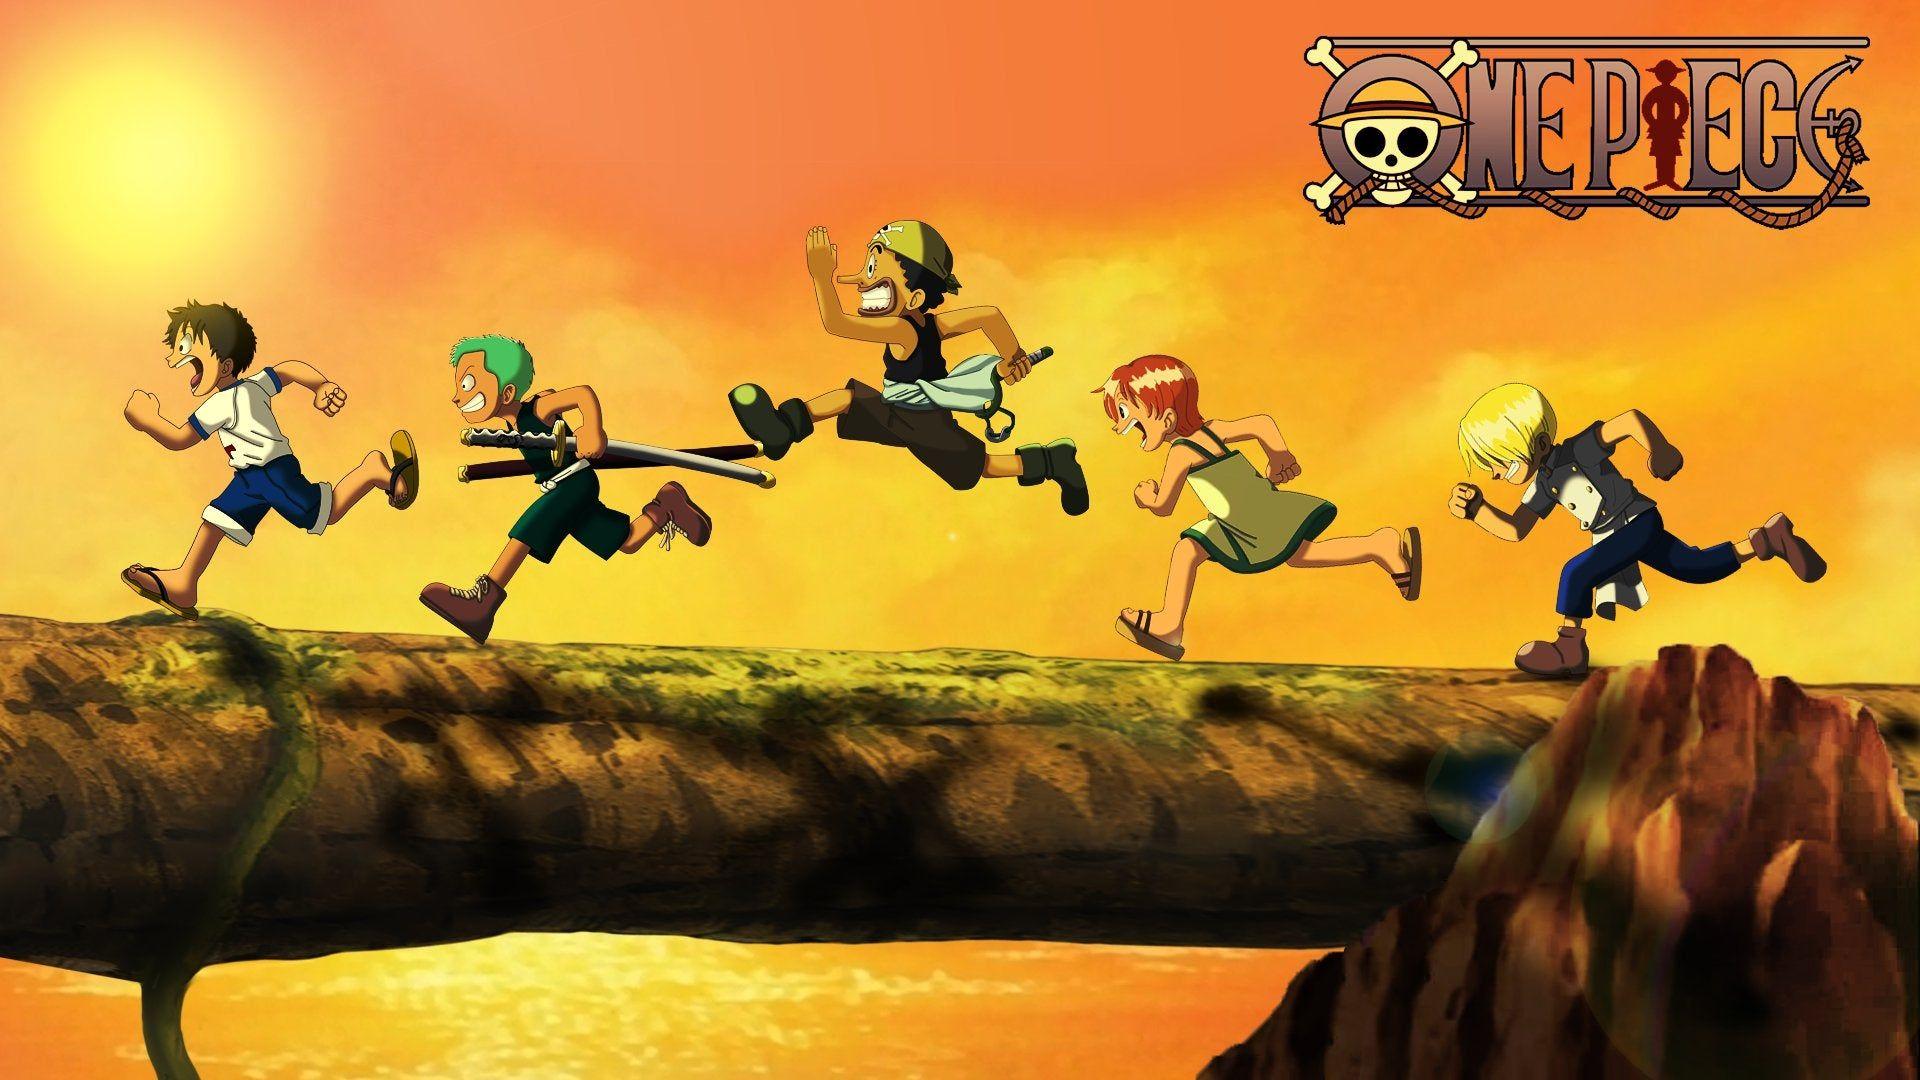 Hãy tải ngay hình nền iPad One Piece để cùng tham gia vào cuộc phiêu lưu vô cùng thú vị của băng hải tặc Mũ Rơm! Với hình ảnh đầy màu sắc và sống động, bạn sẽ cảm nhận được sức sống đầy năng lượng trong từng khoảnh khắc.